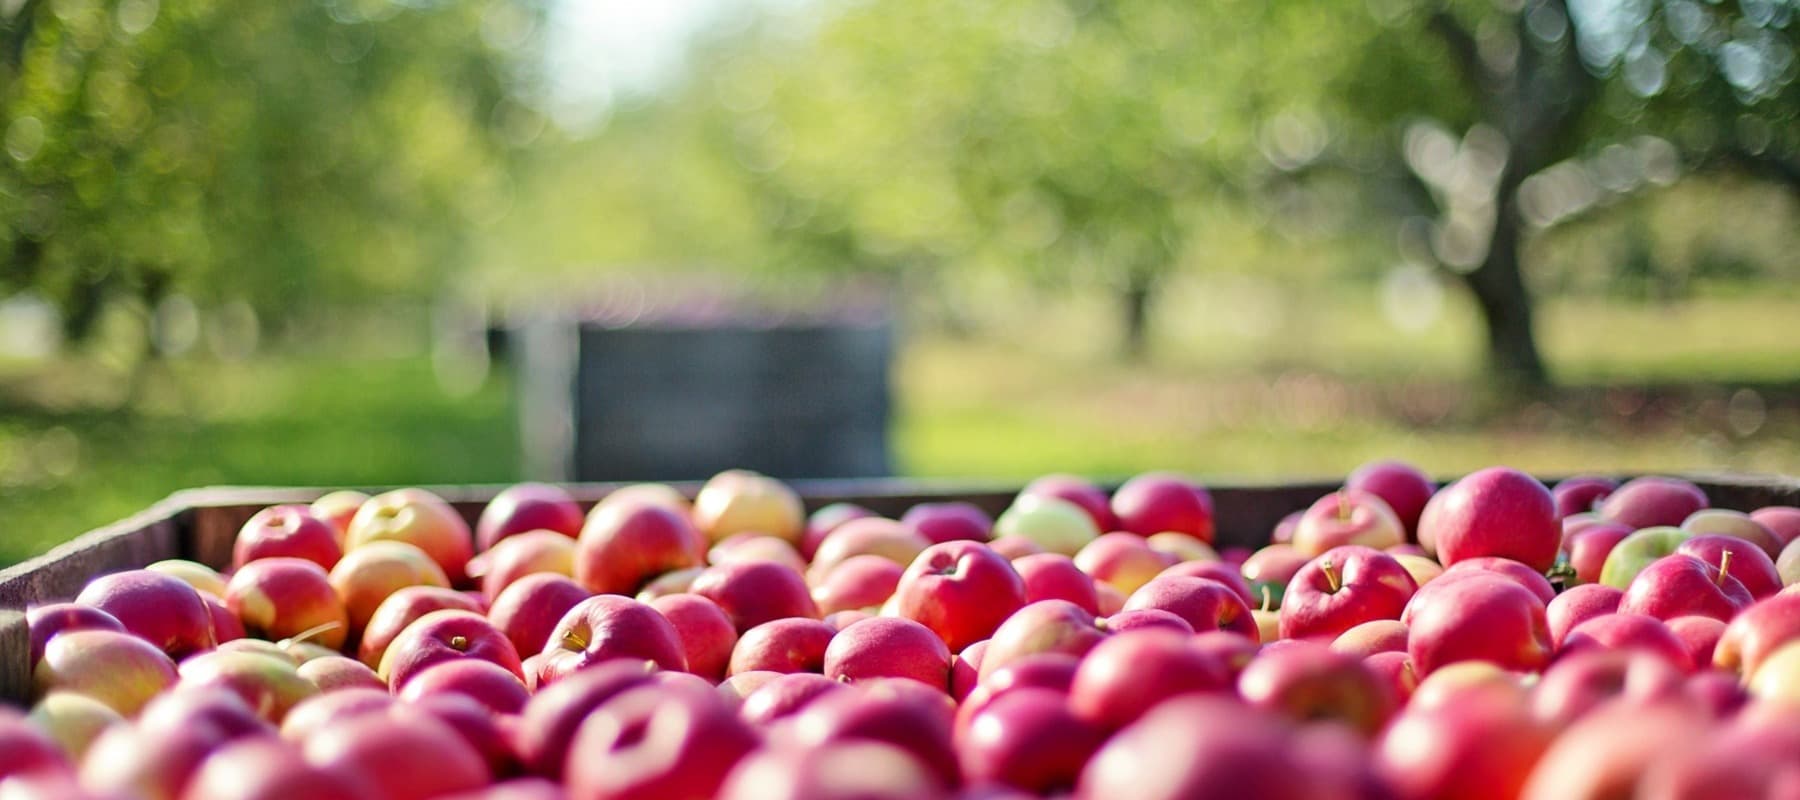 Фото новости: "Урожай яблок в этом году может стать рекордным"